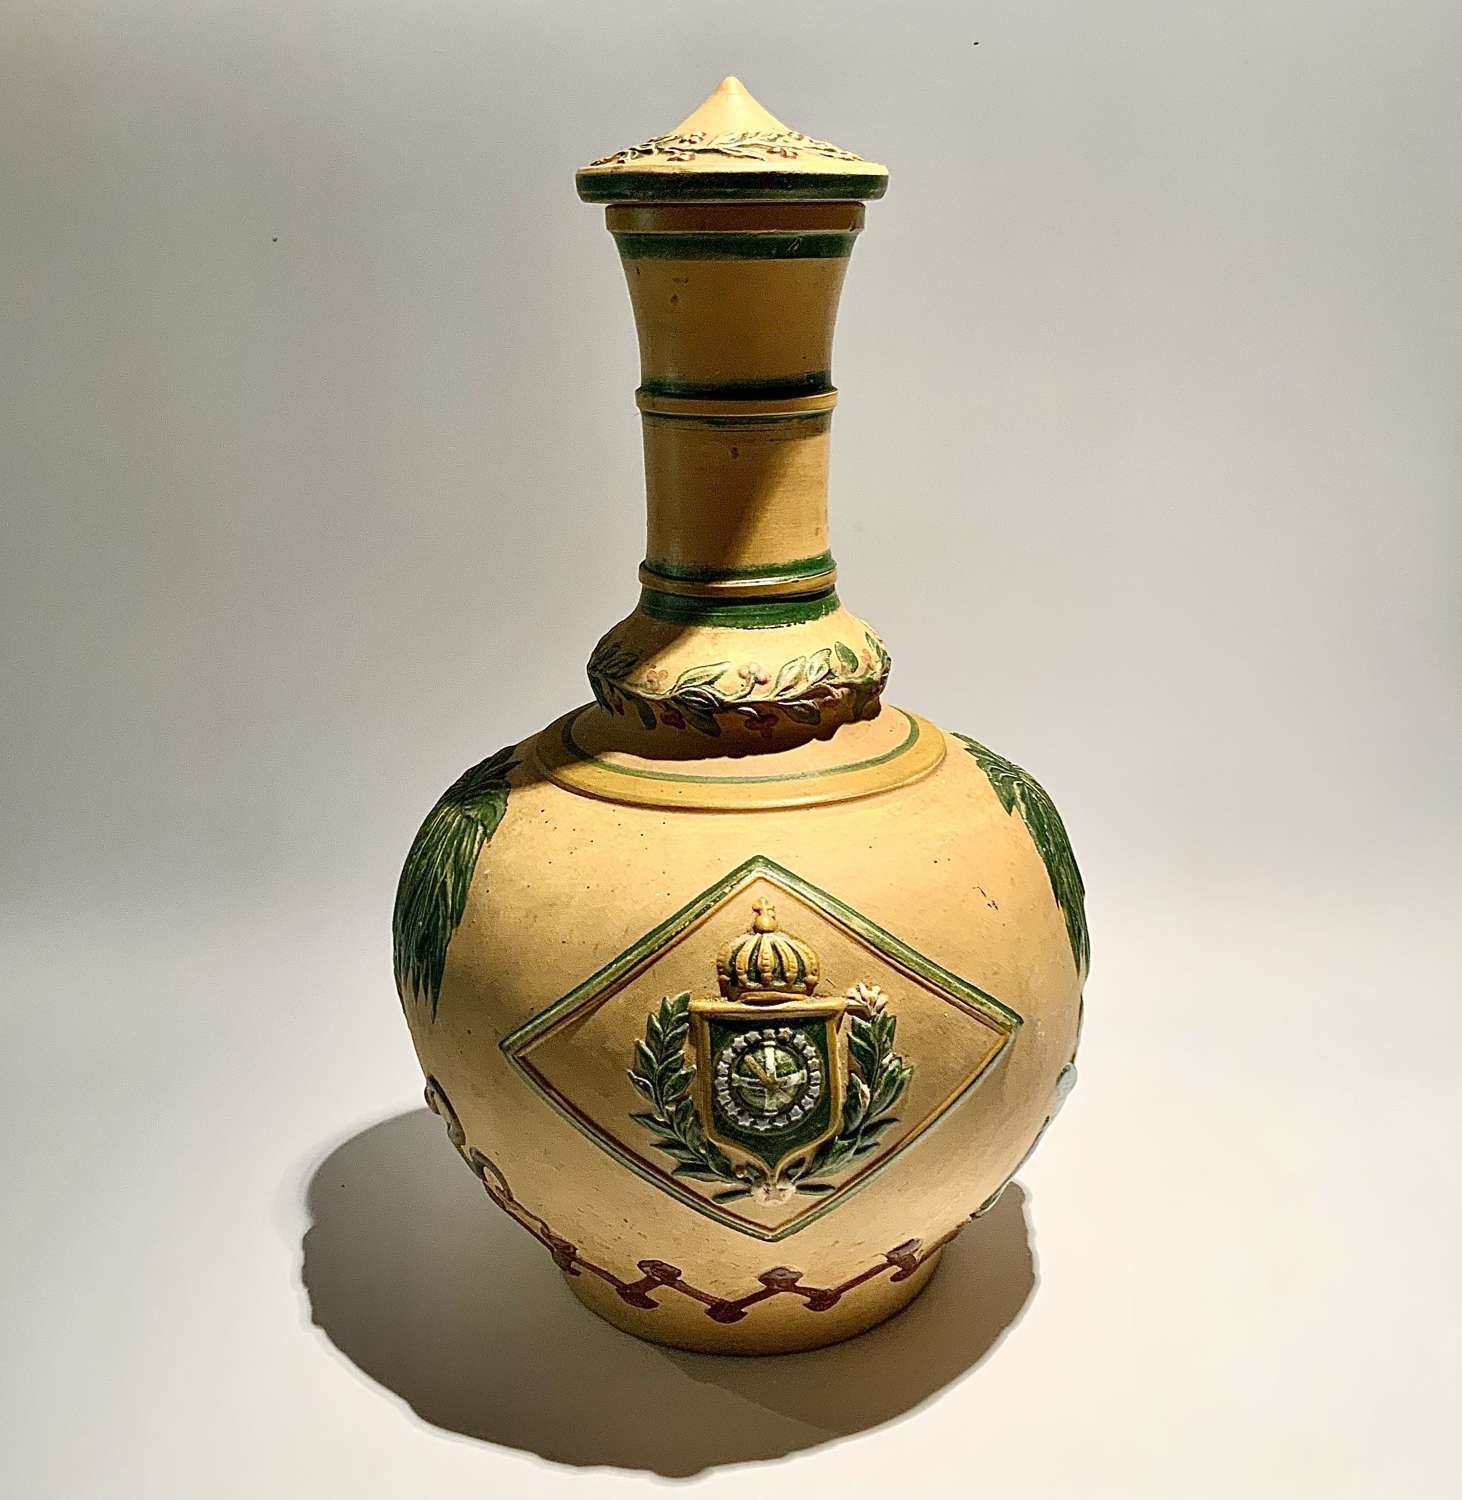 A Rare Empire of Brazil Terracotta Bottle-Vase Carafe c.1870s